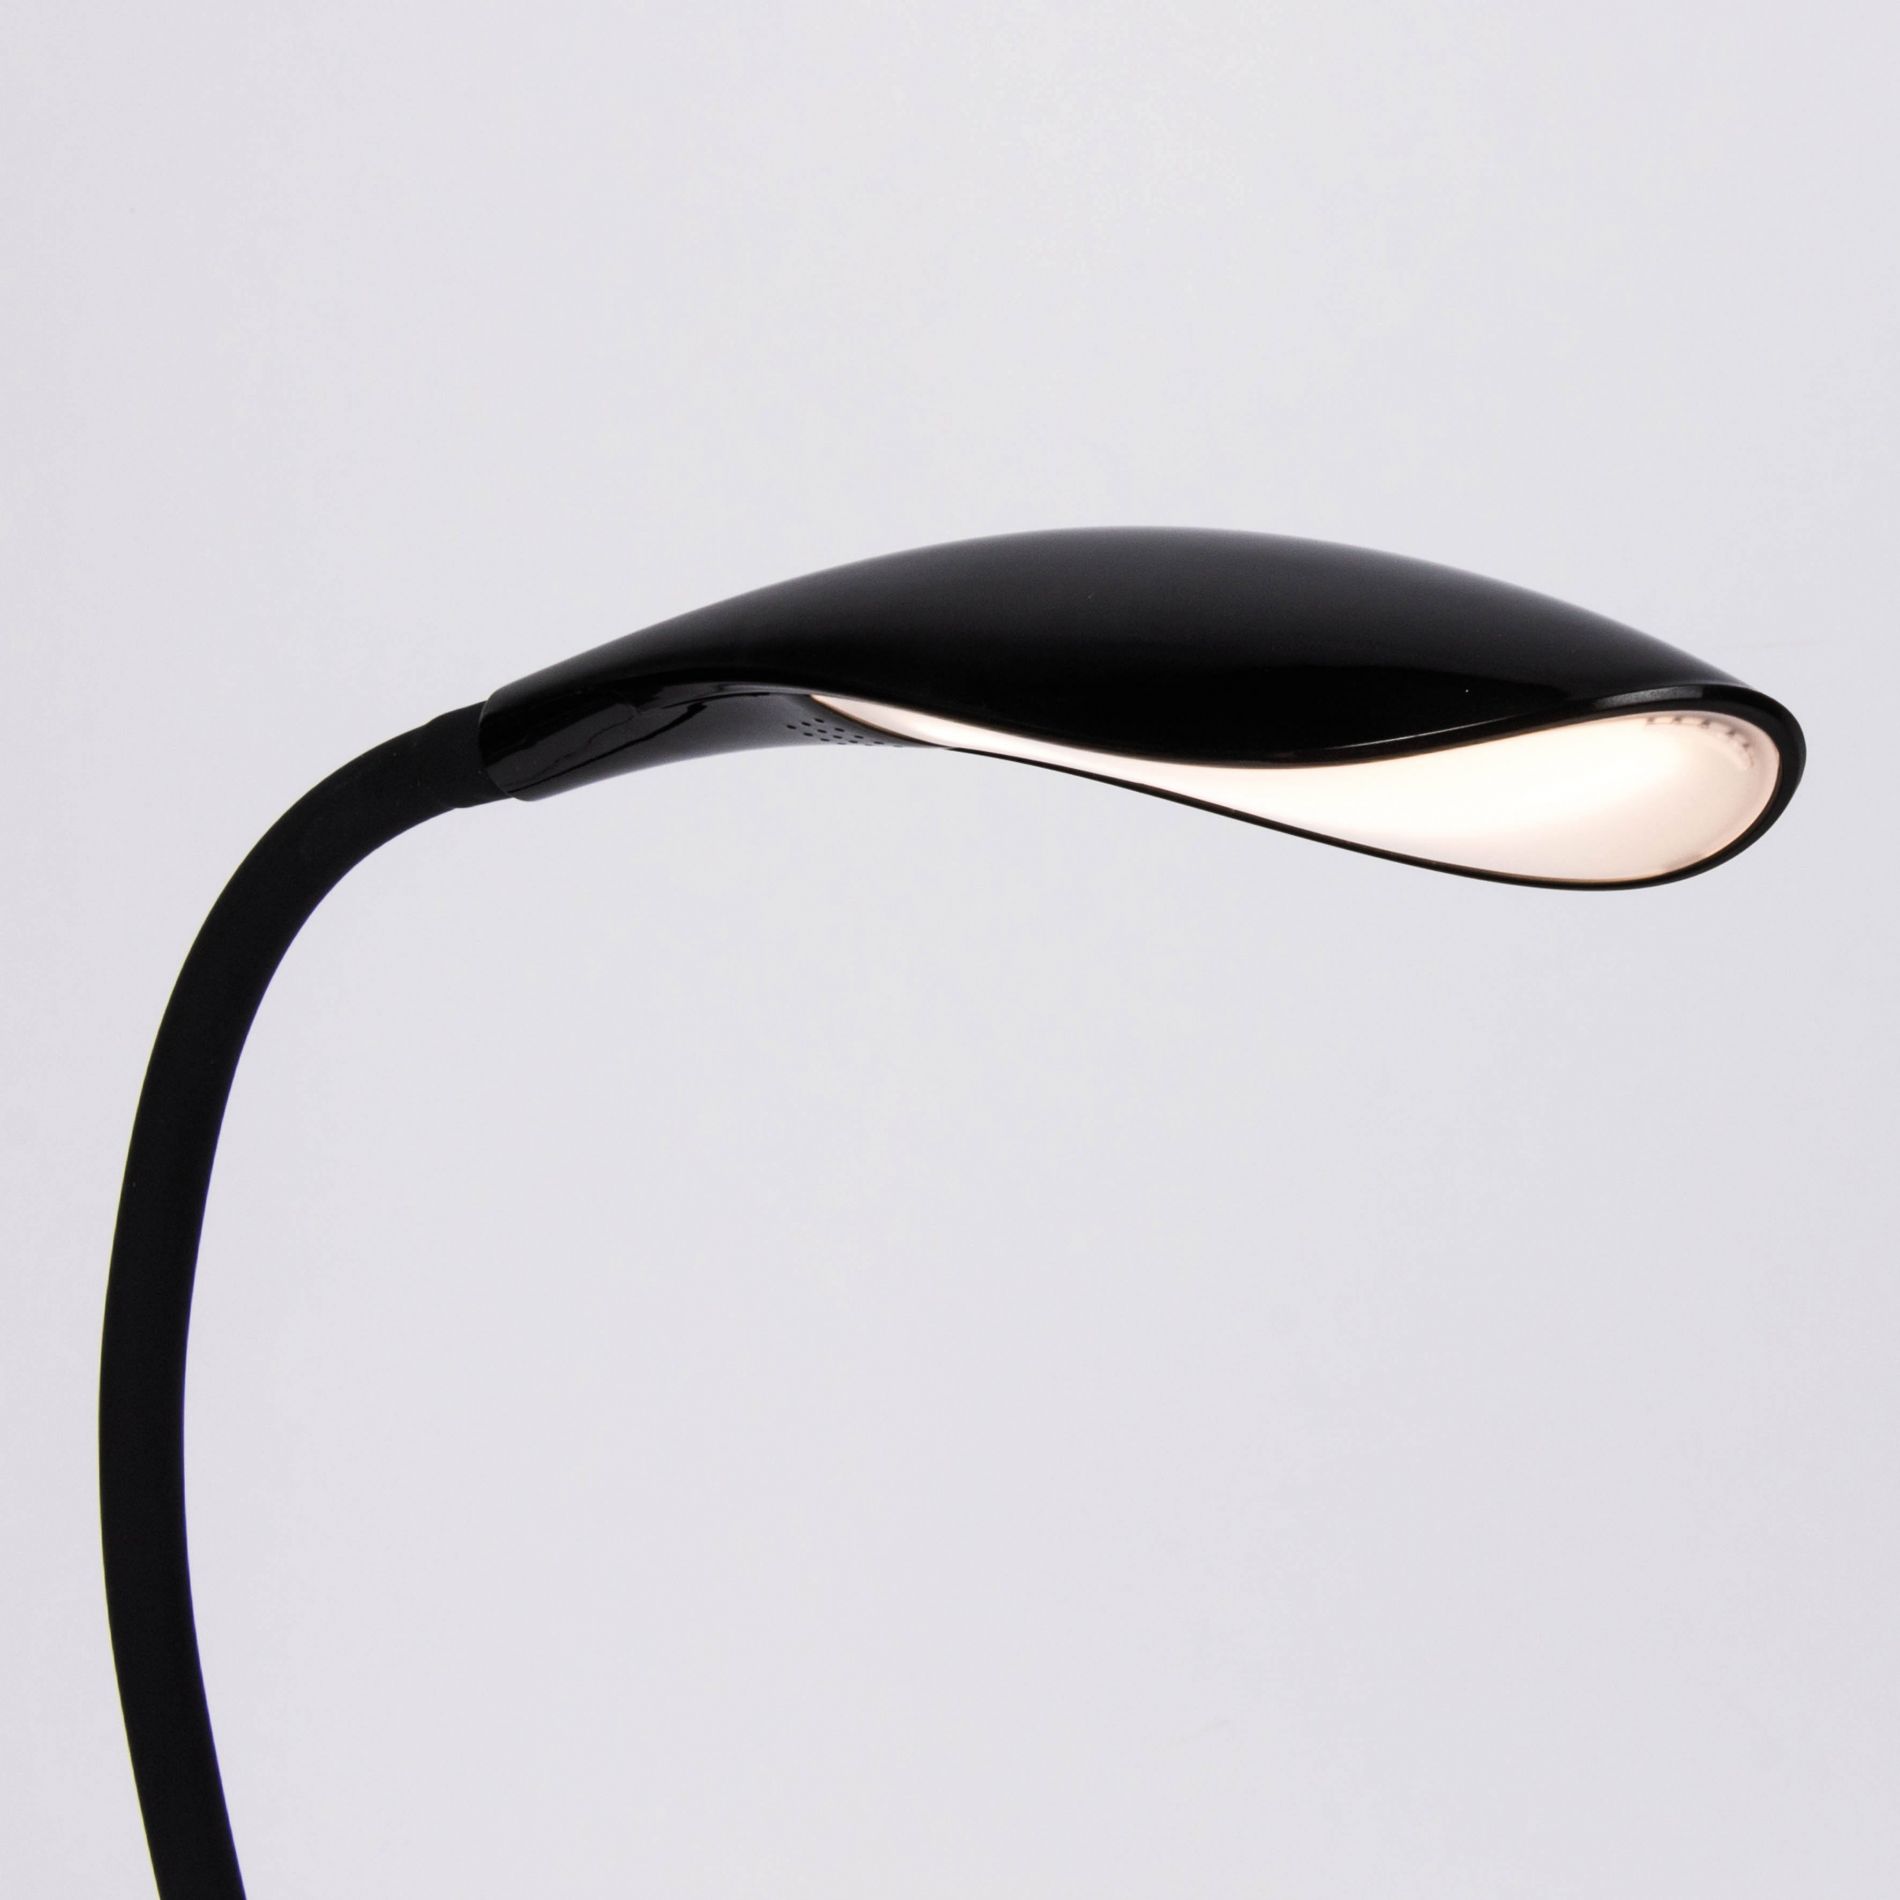 Pupitre Lampe Lampe Clip-on 2 Bras Doubles 4 LED Lampe Flexible Noir,Lilaris